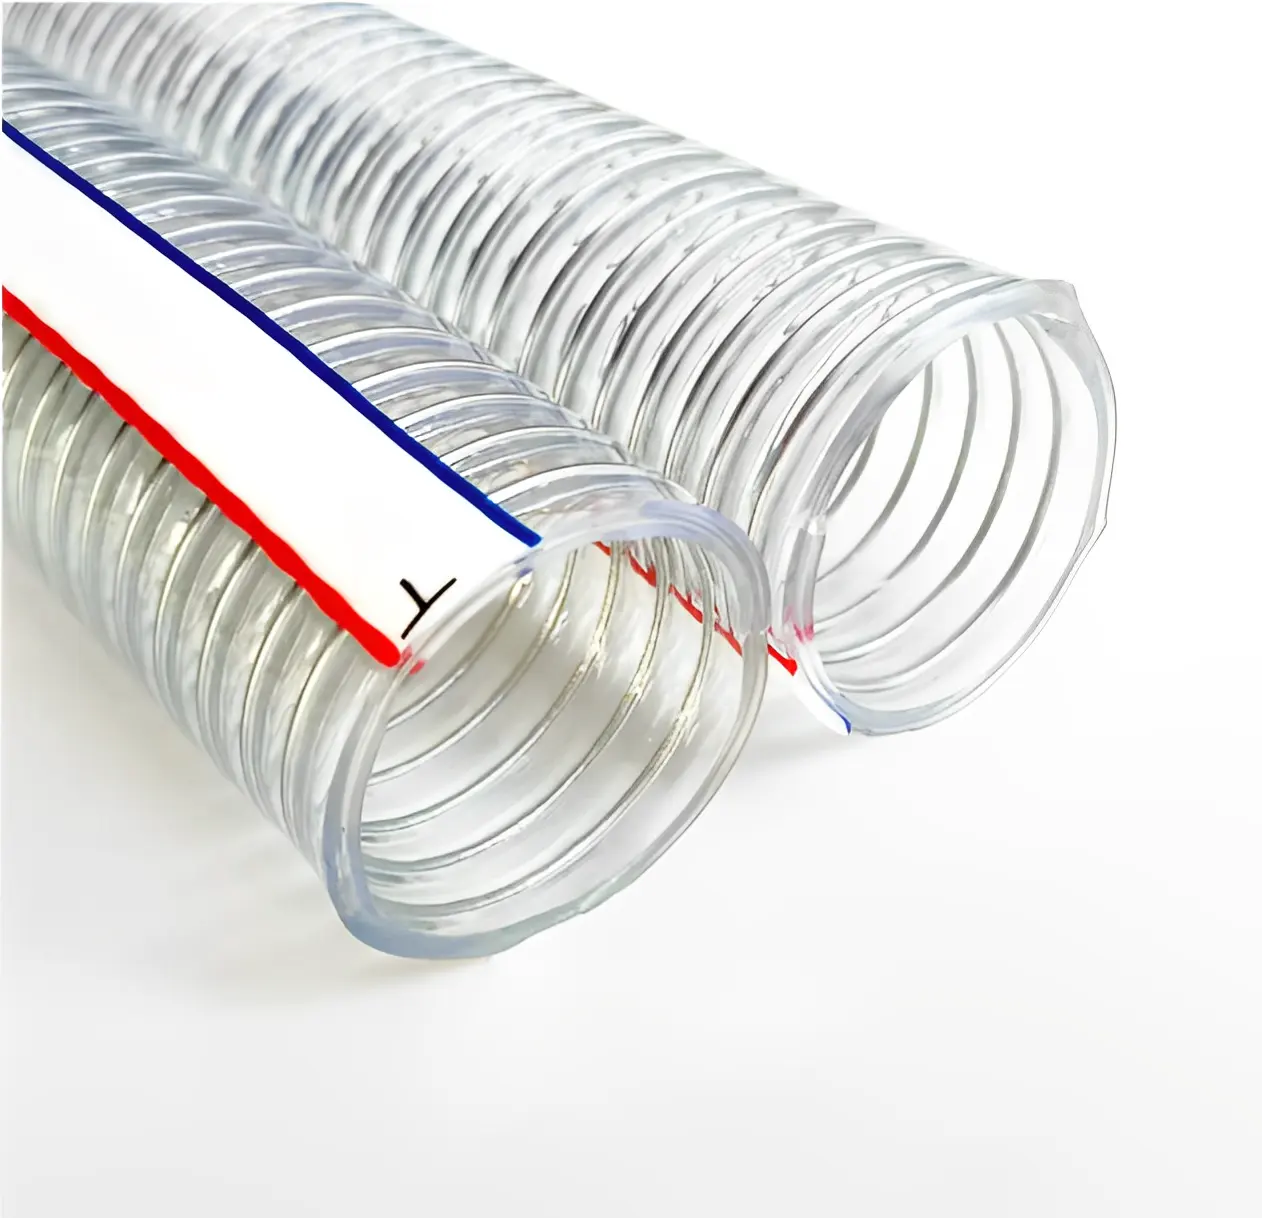 Direkt verkauf ab Werk Hochwertiger flexibler transparenter verstärkter Netz schlauch PVC-Spiral stahldraht rohr